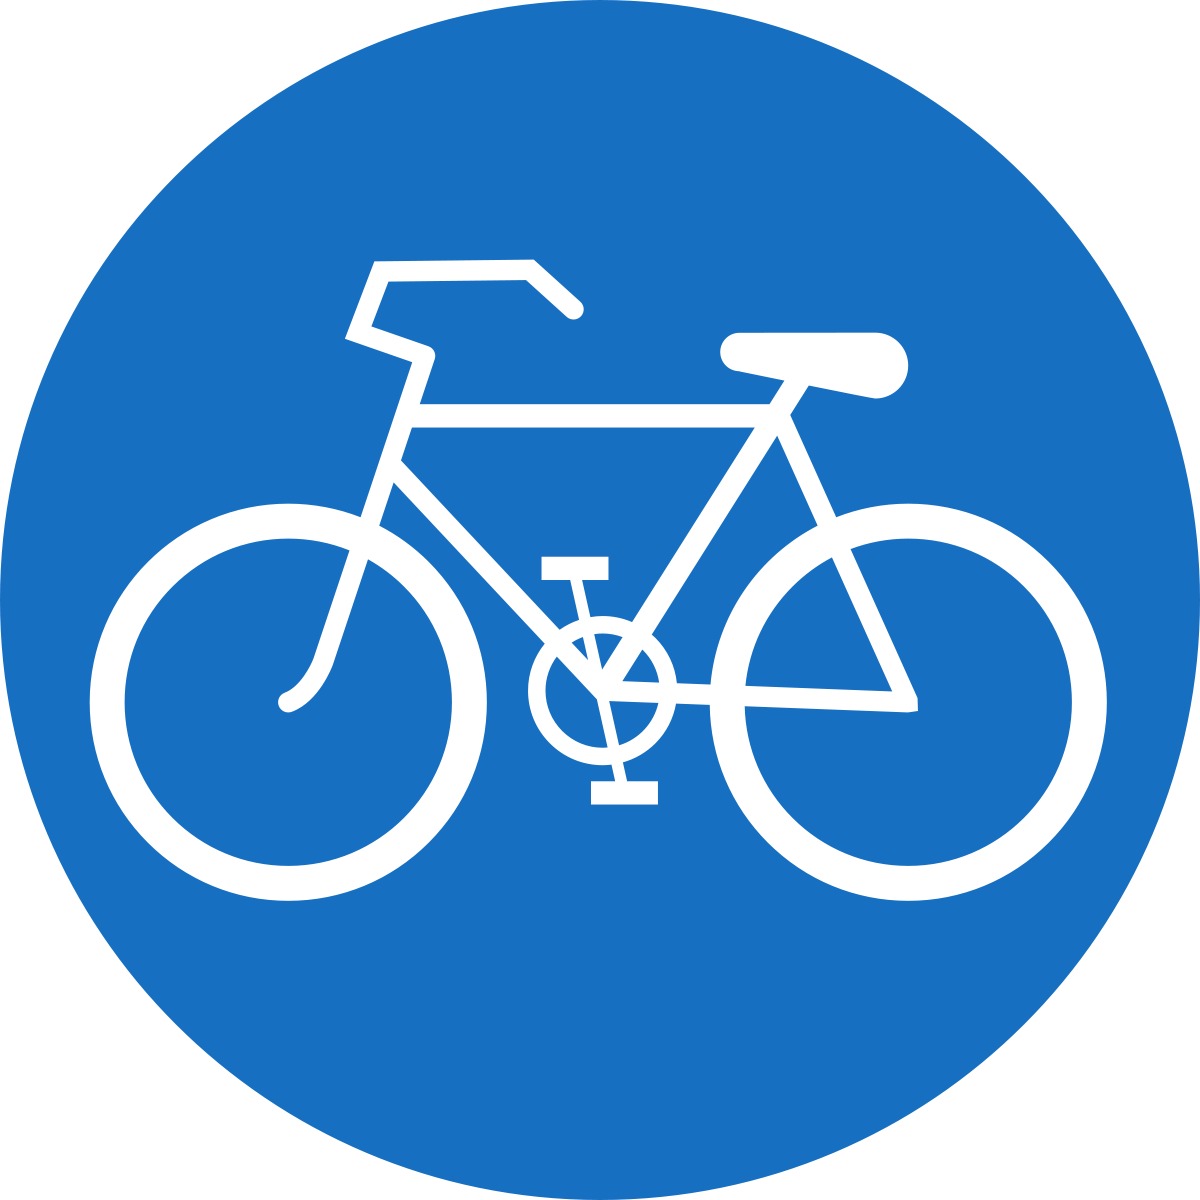 Eurovelo 6 kerékpáros útvonal fejlesztése Dömös-Szentendre szakaszon